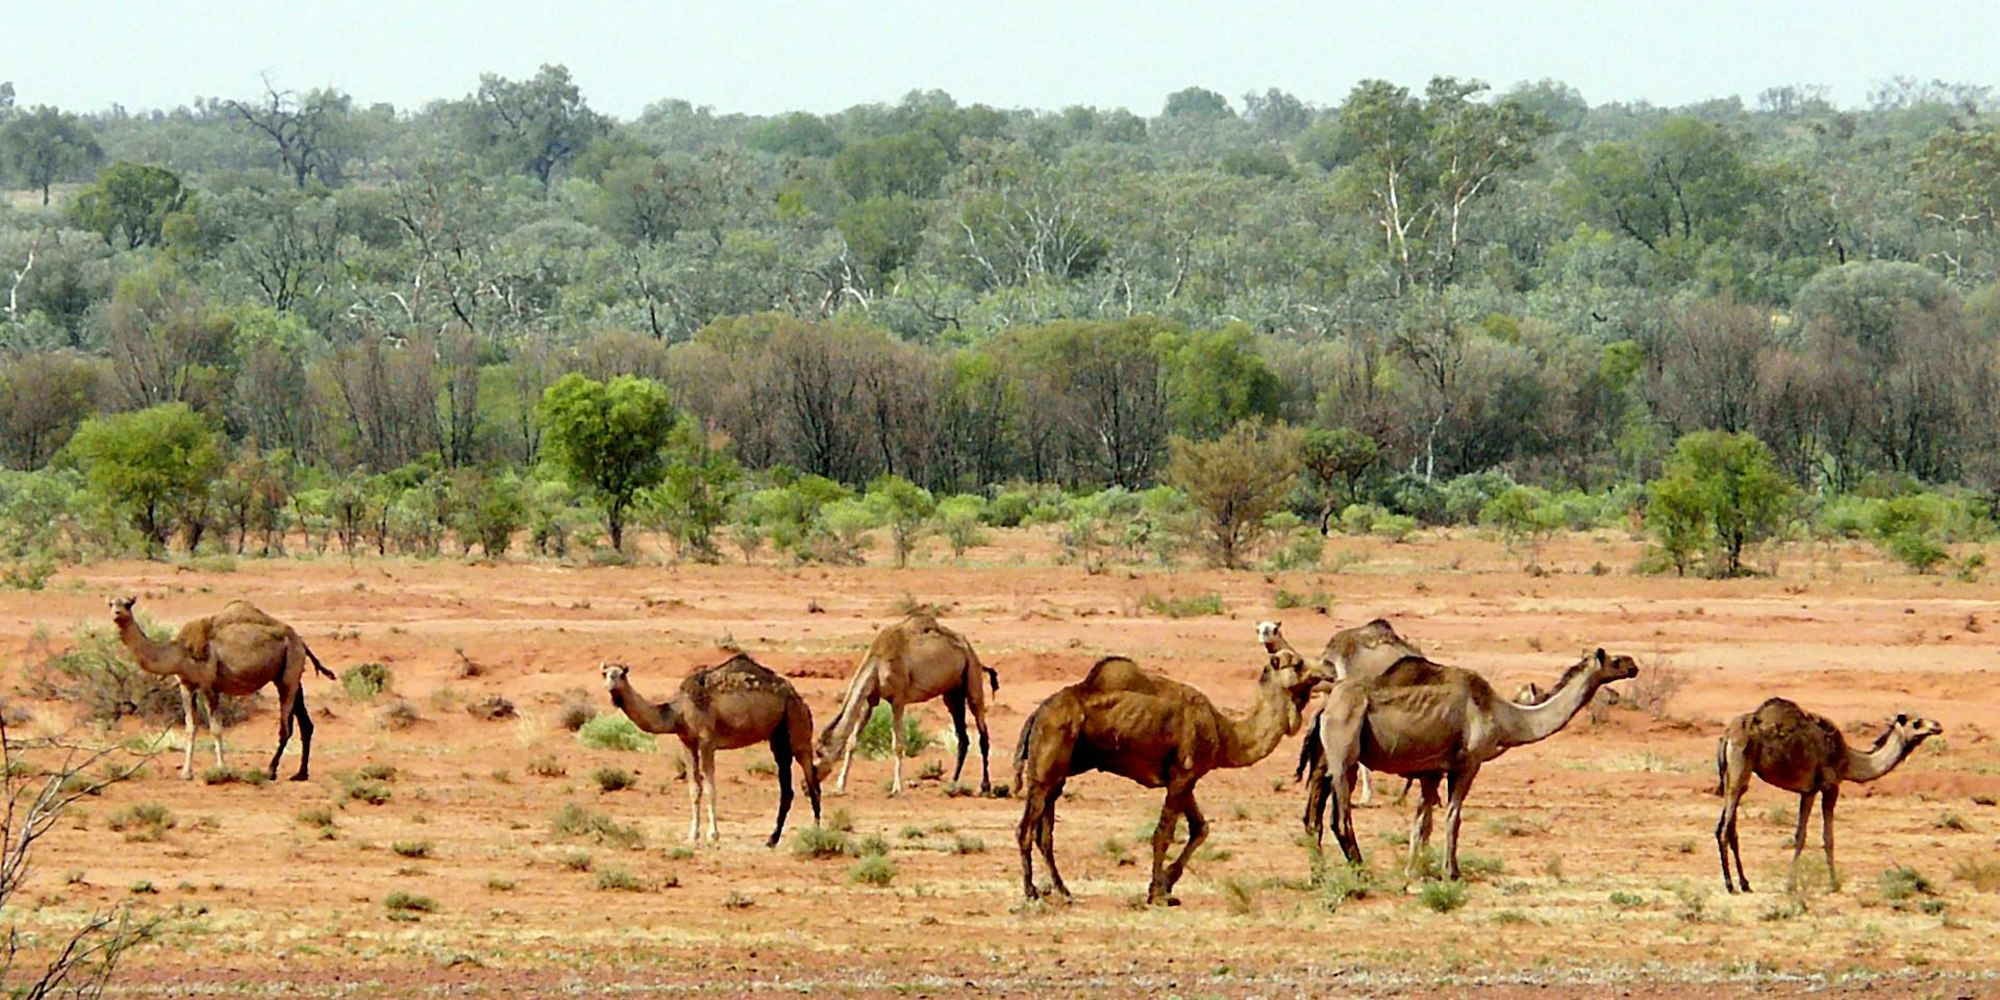 Kamele Australien